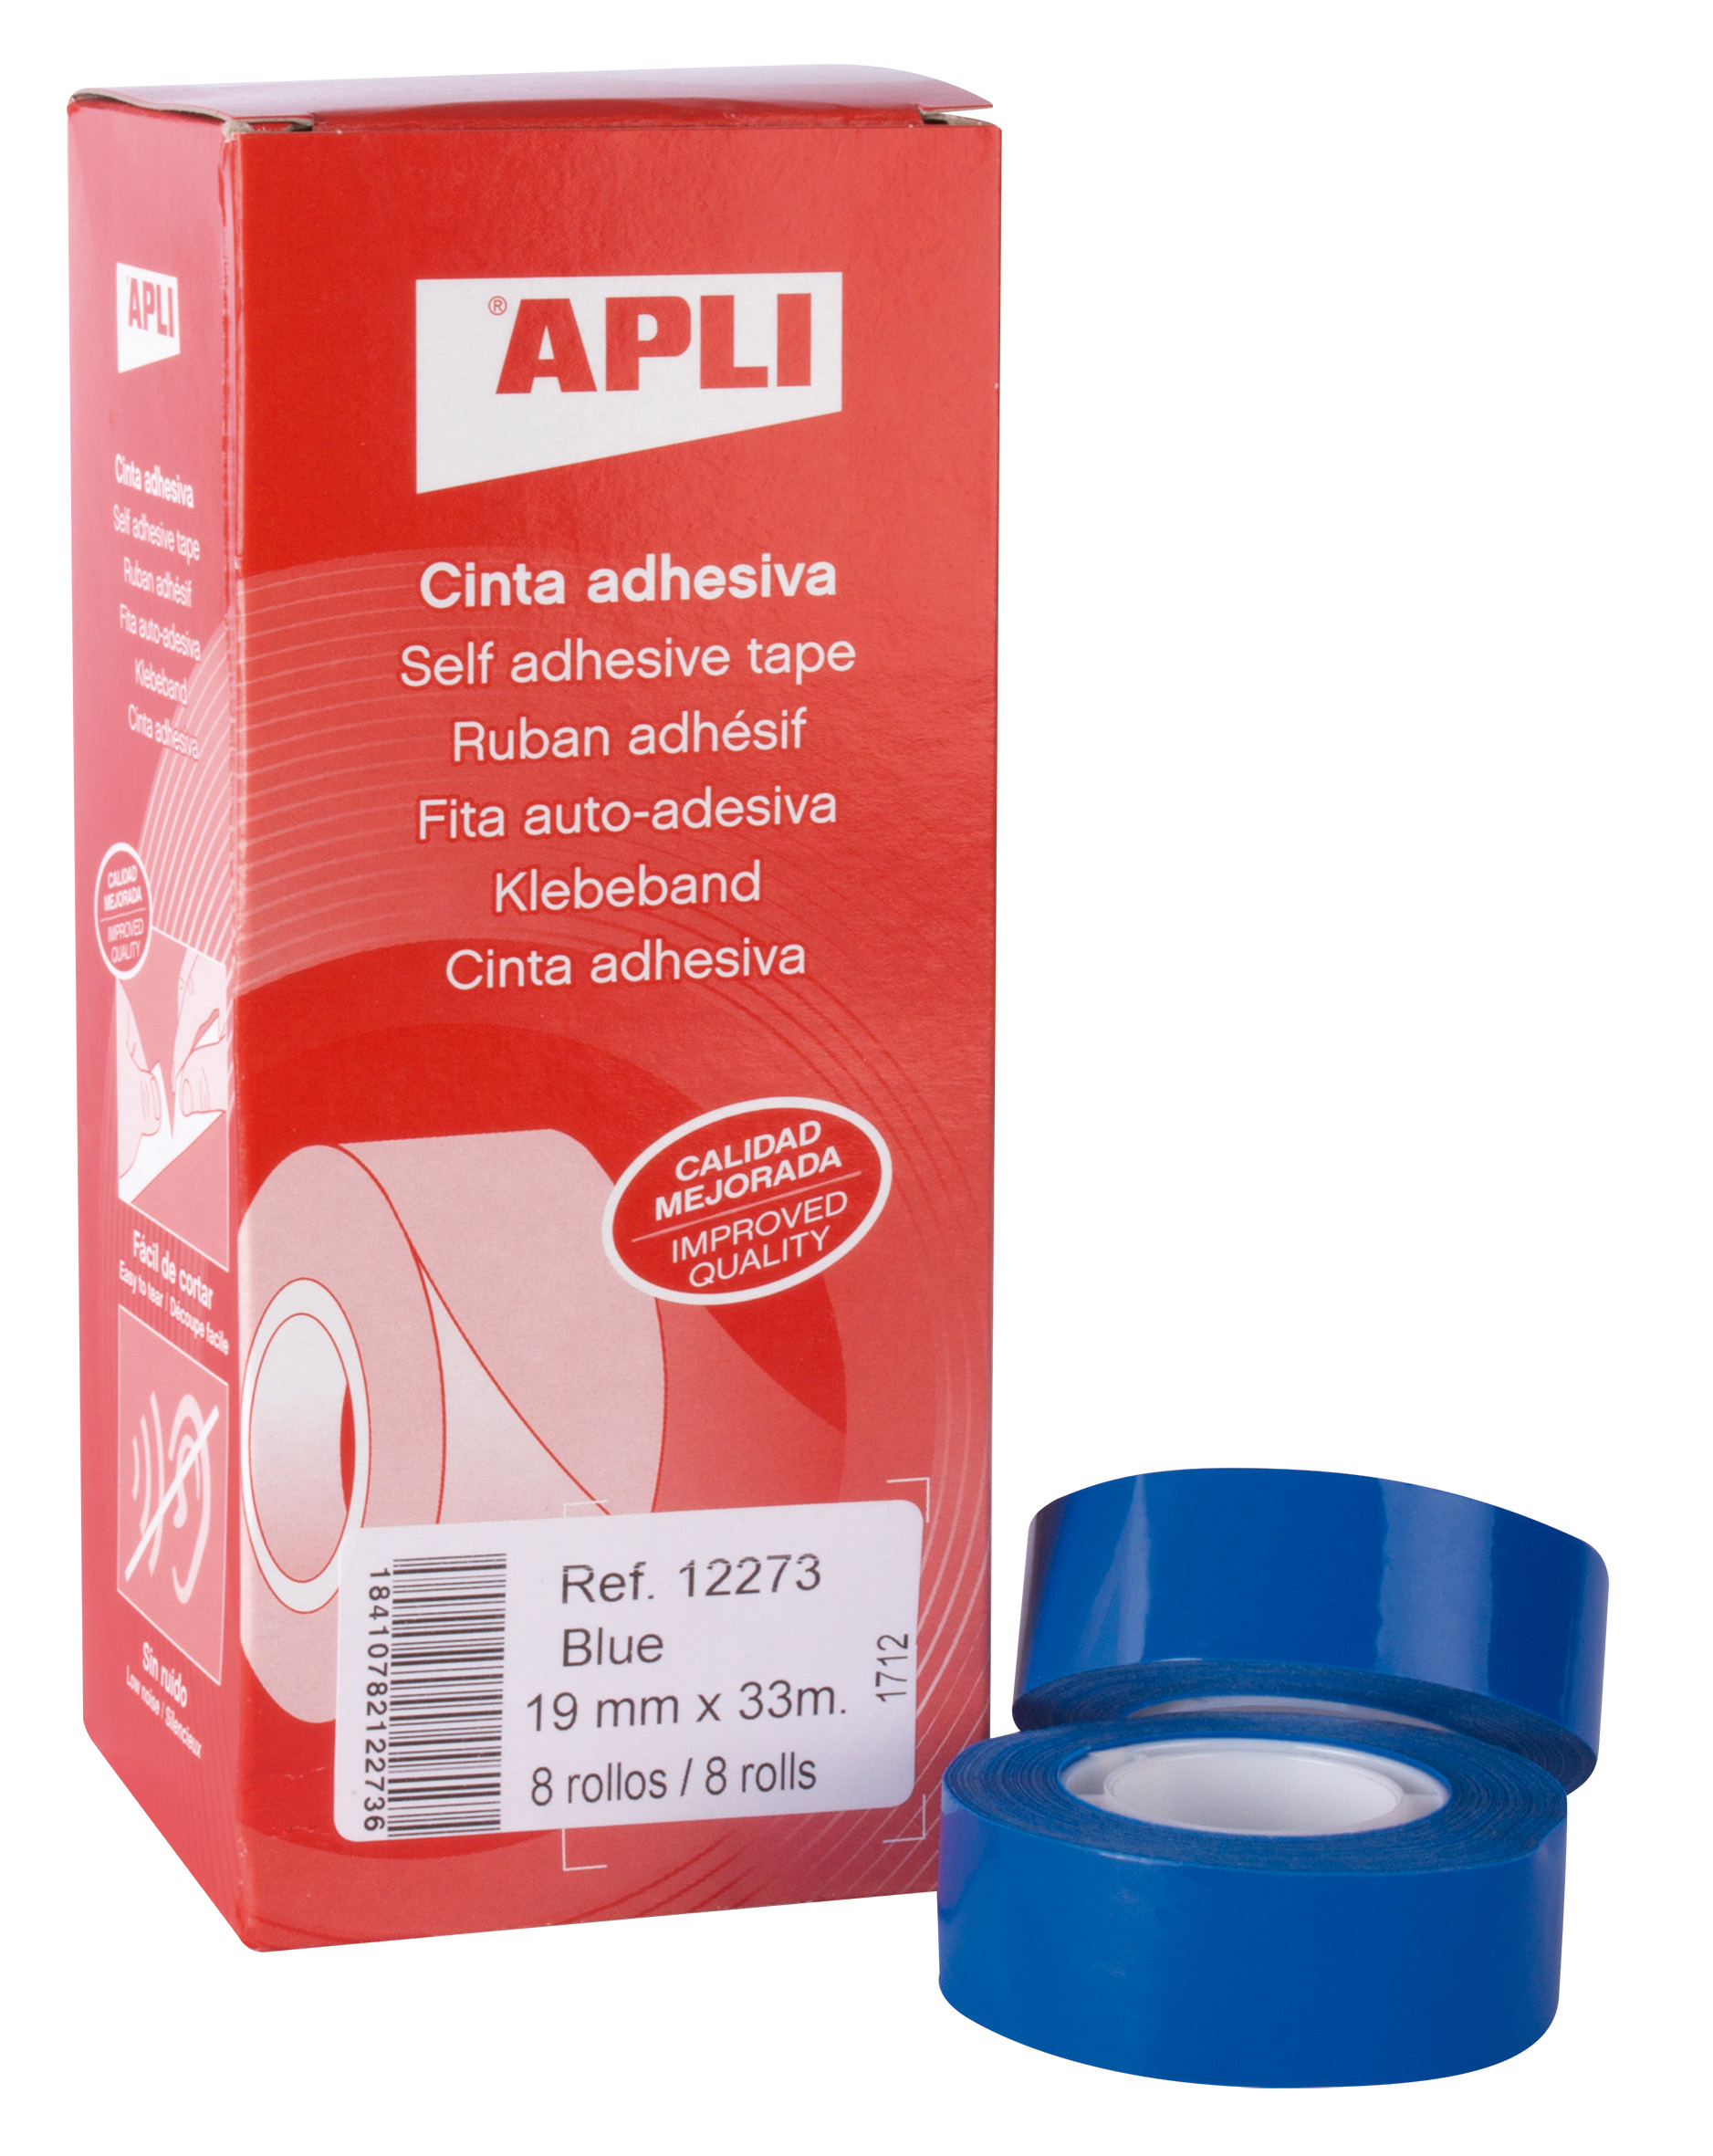 Apli Cinta Adhesiva Azul 19mm x 33m - Resistente al Agua y a la Intemperie - Facil de Cortar con las